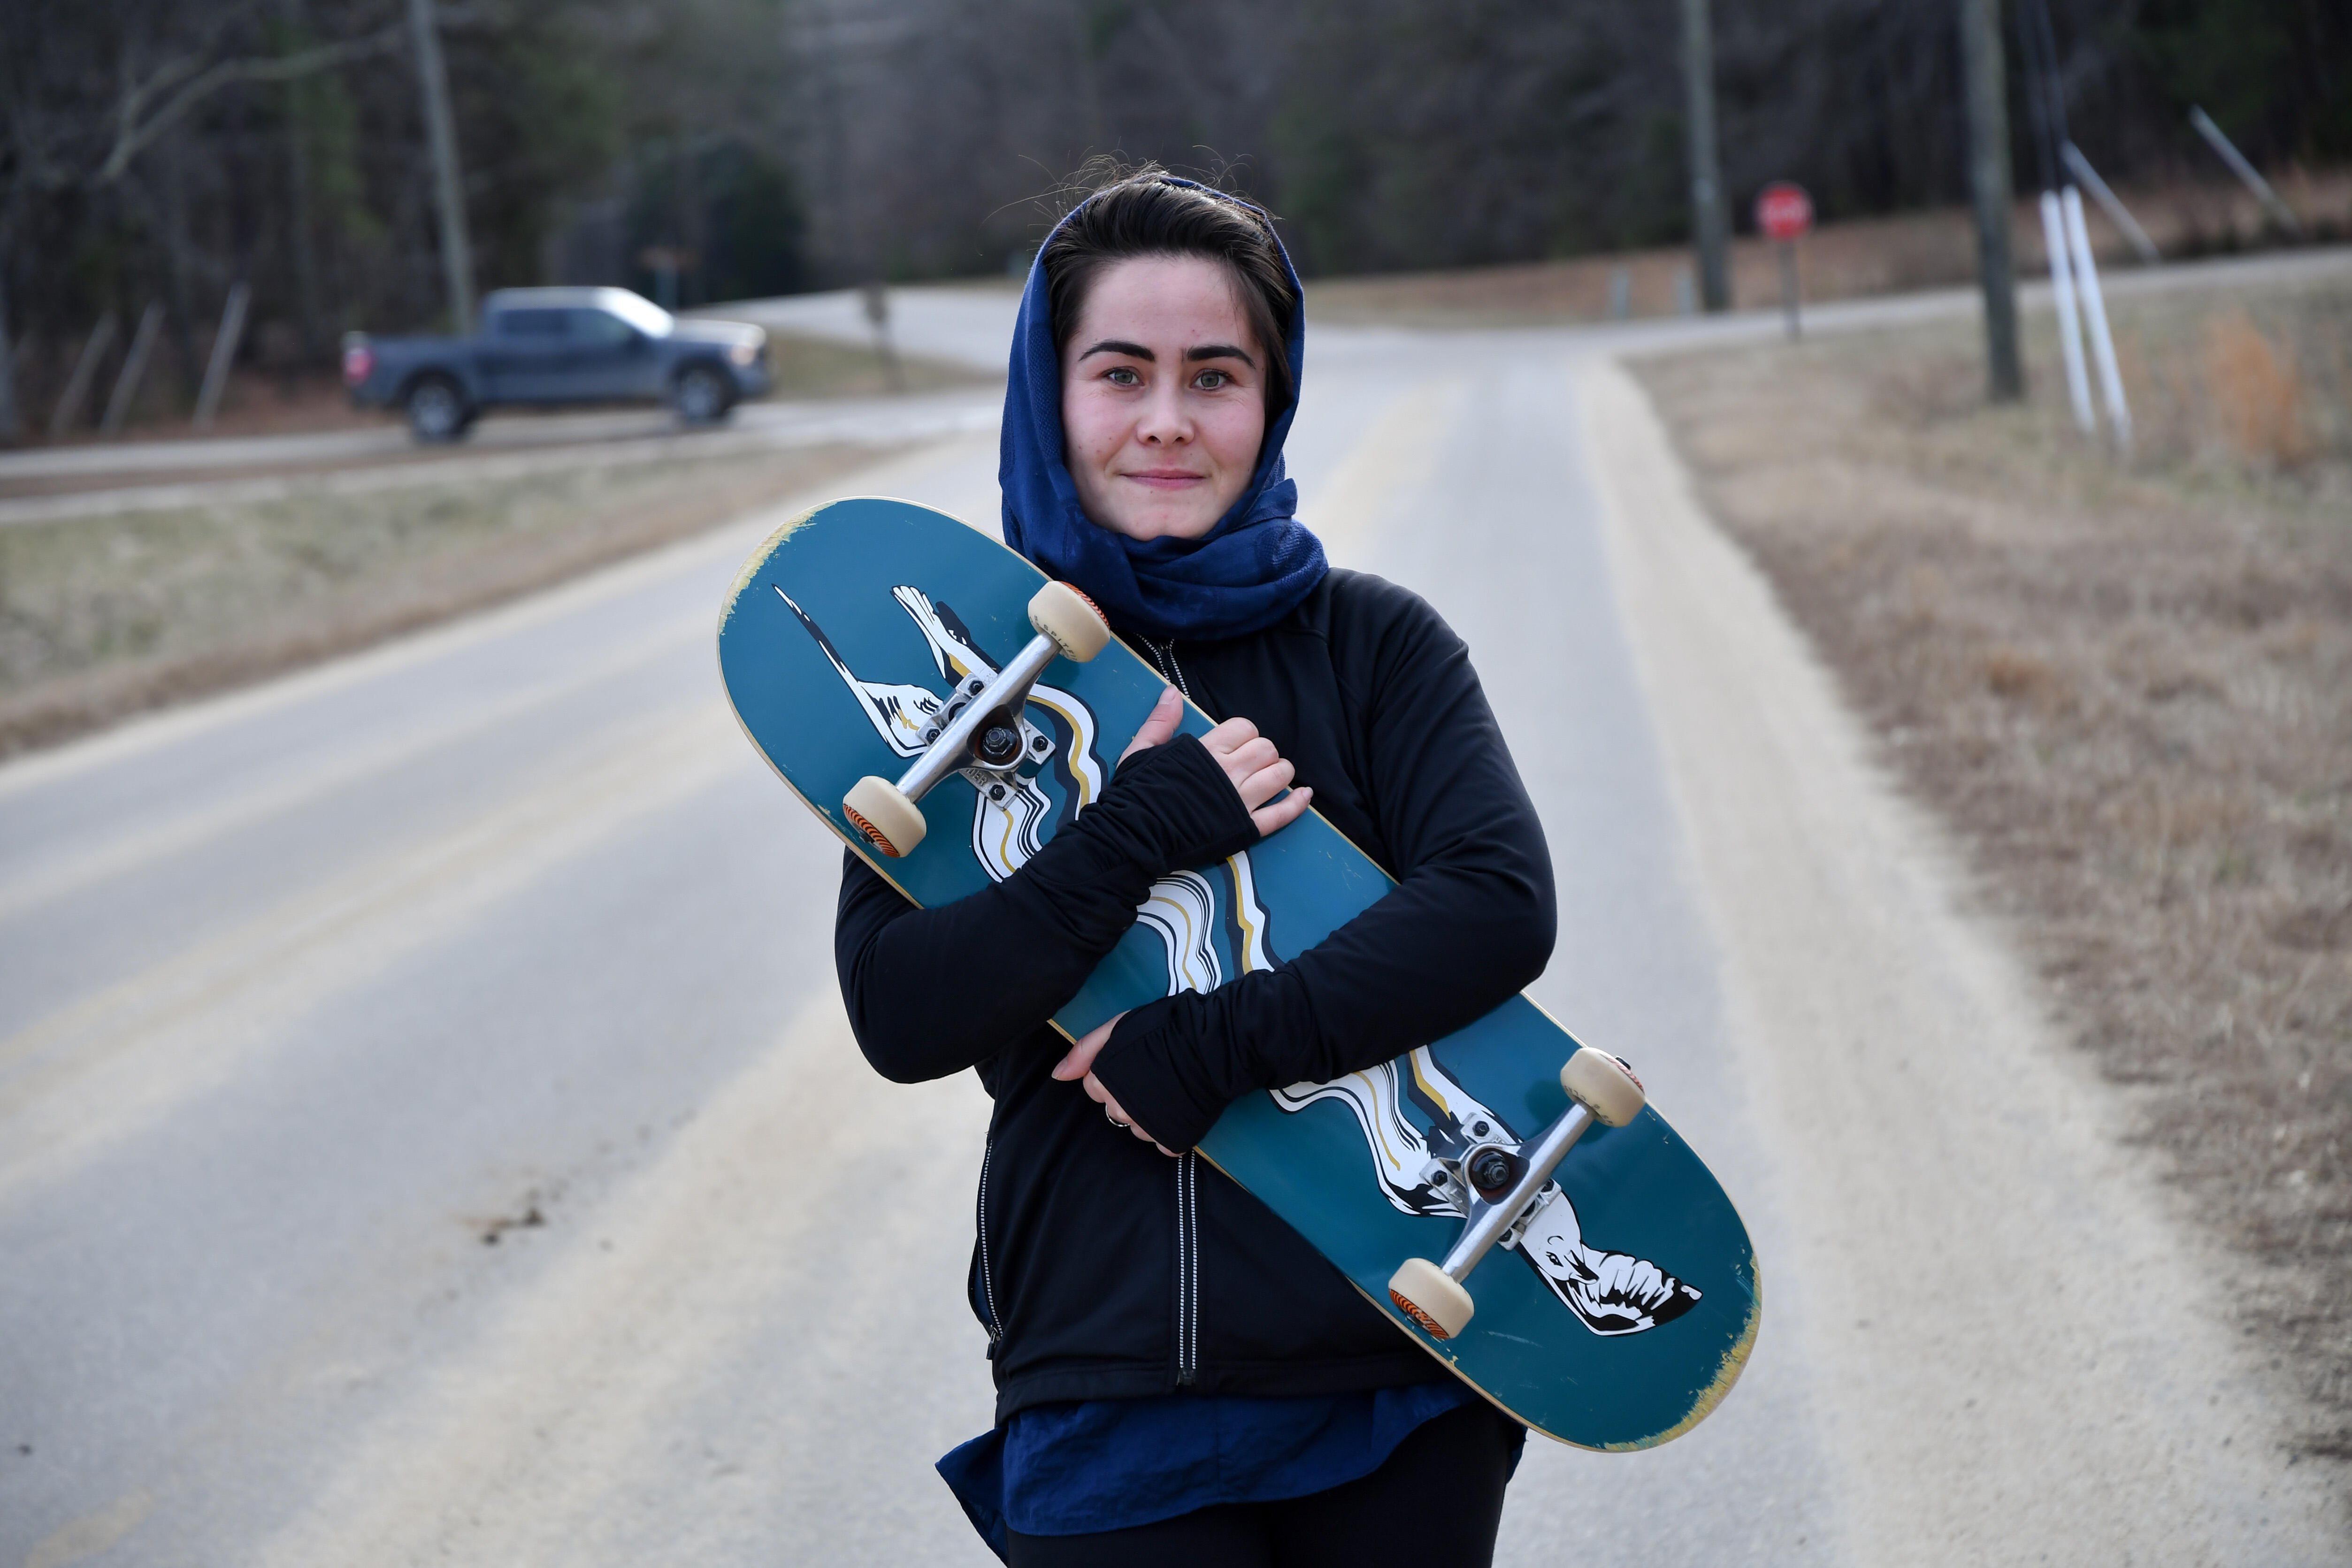 Belqisa holds her skateboard